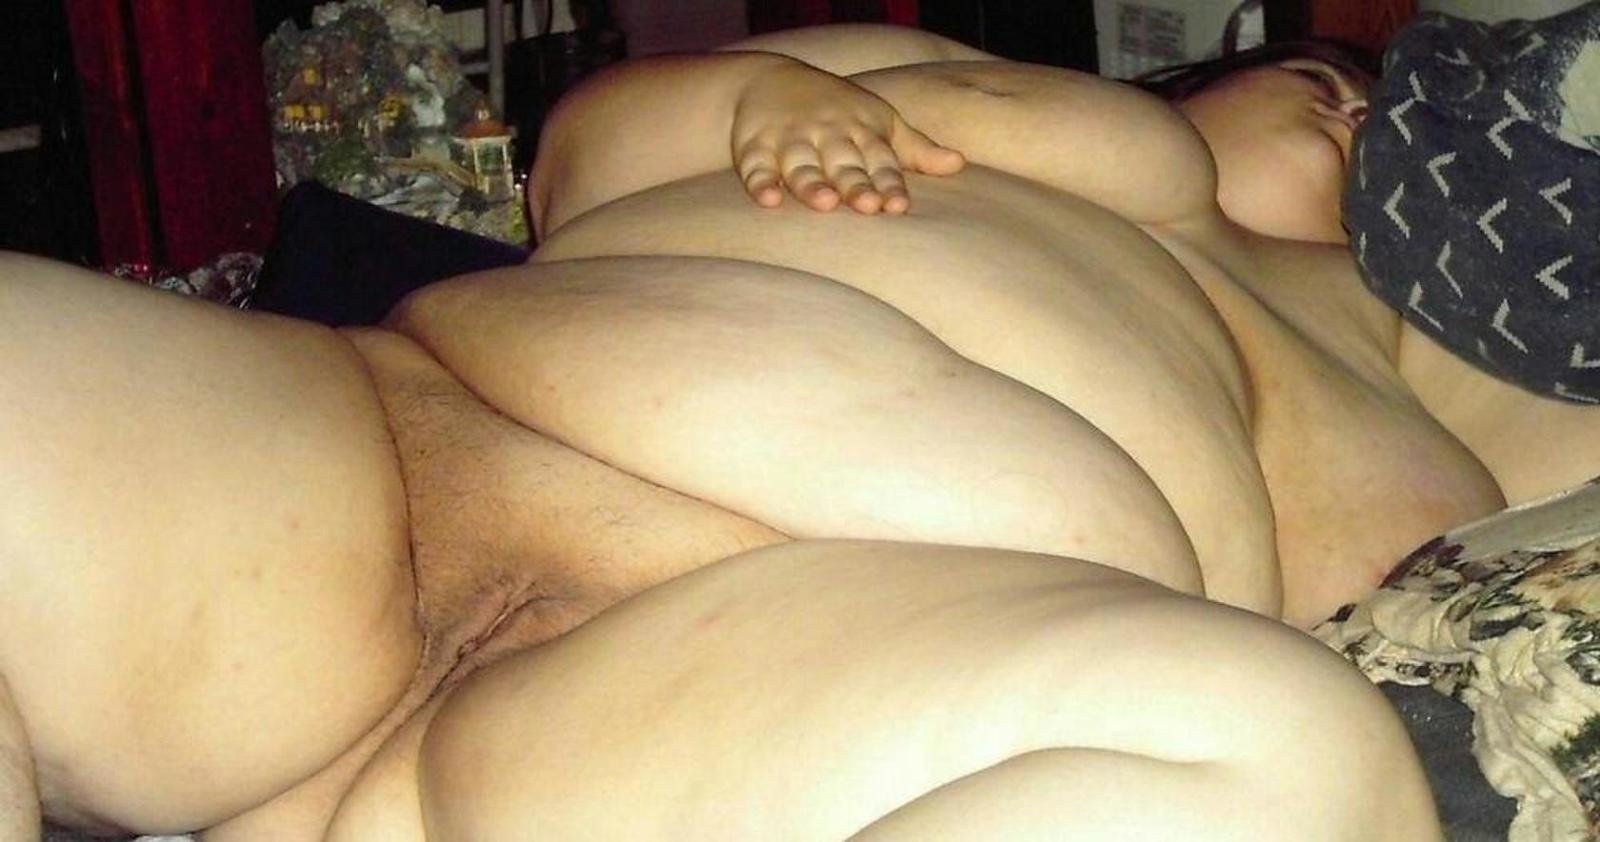 Порно толстая баба спит голой: видео найдено